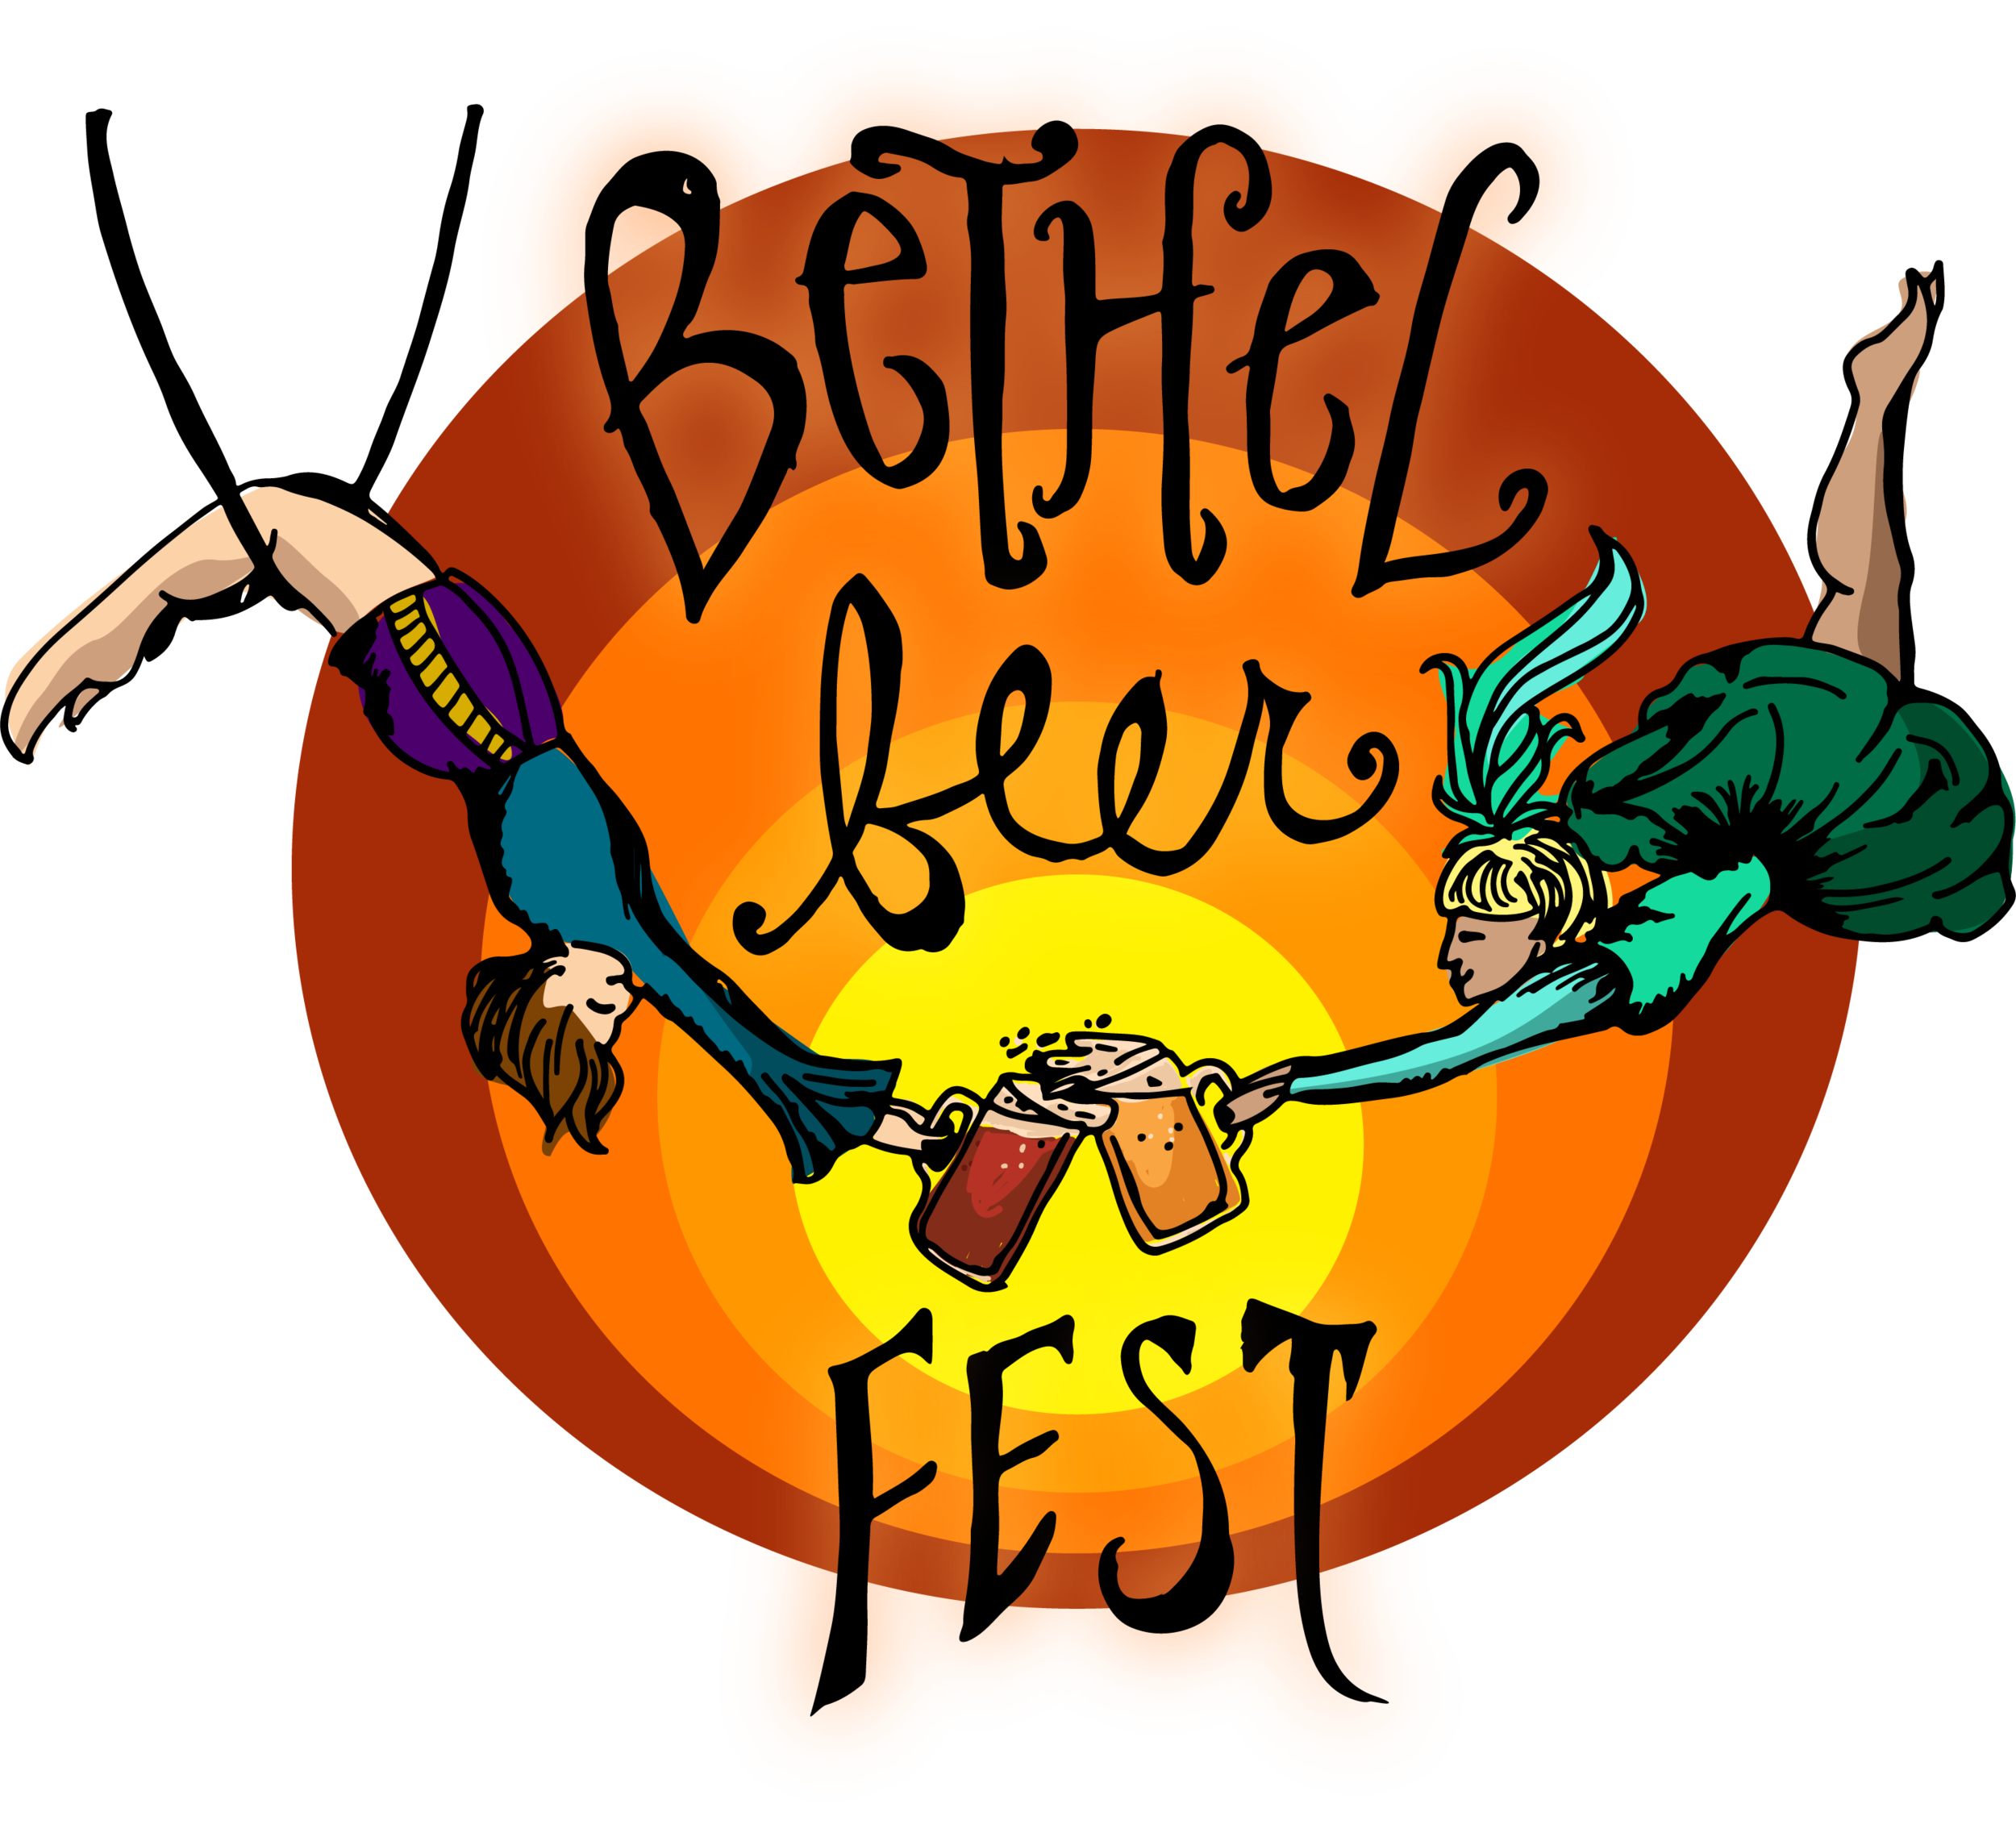 Bethel Beer Fest